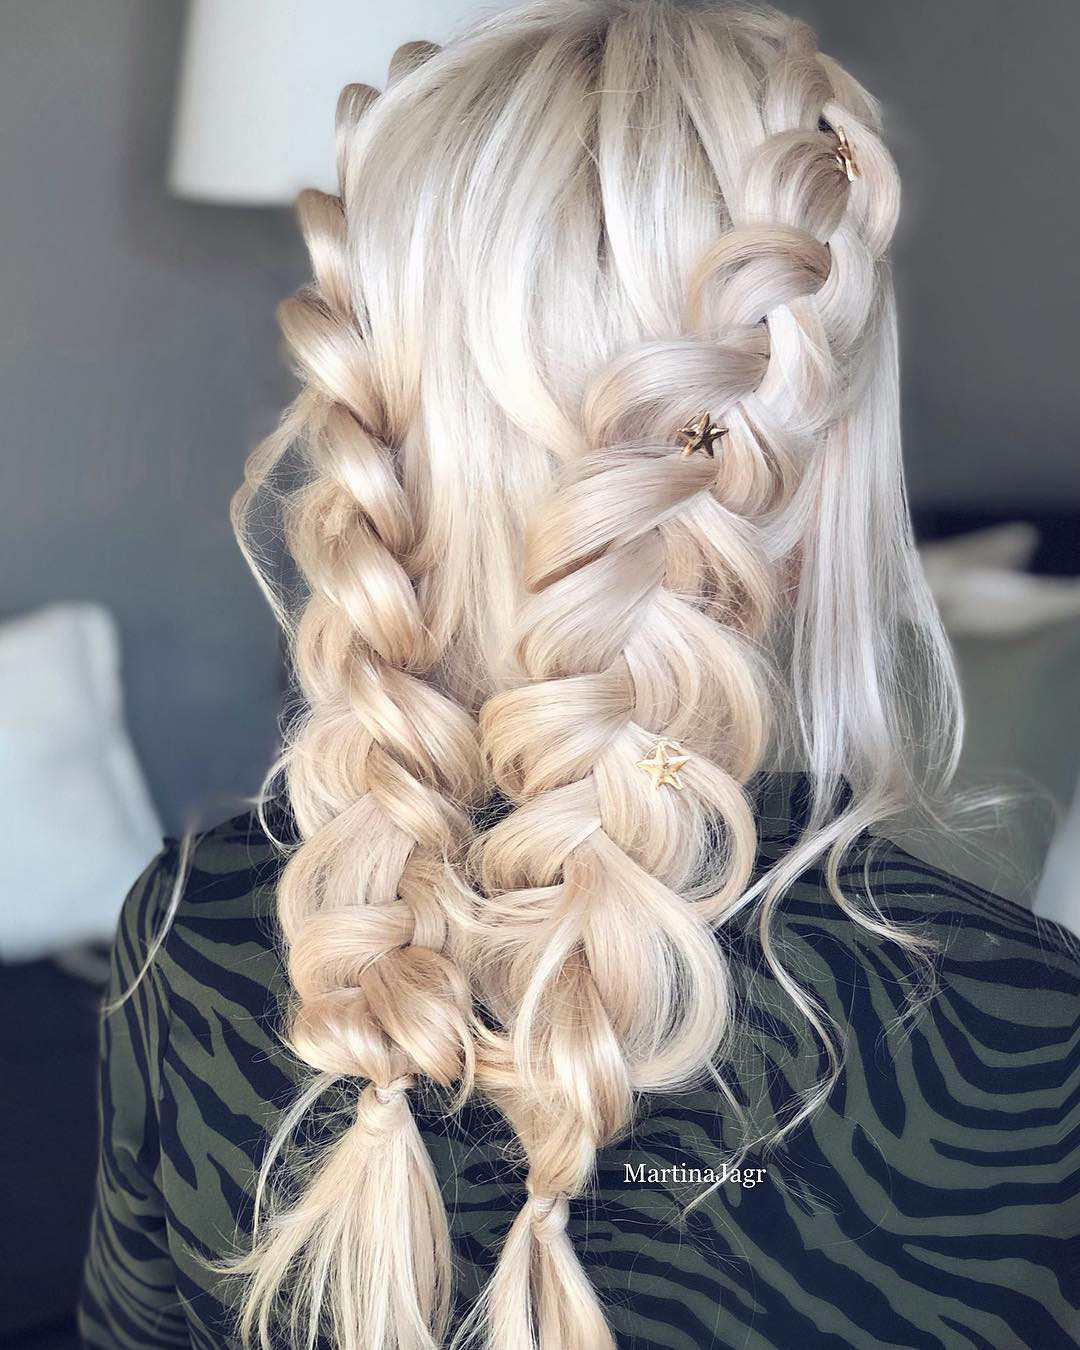 viking wedding hairstyles long blonde two braids martinajagr